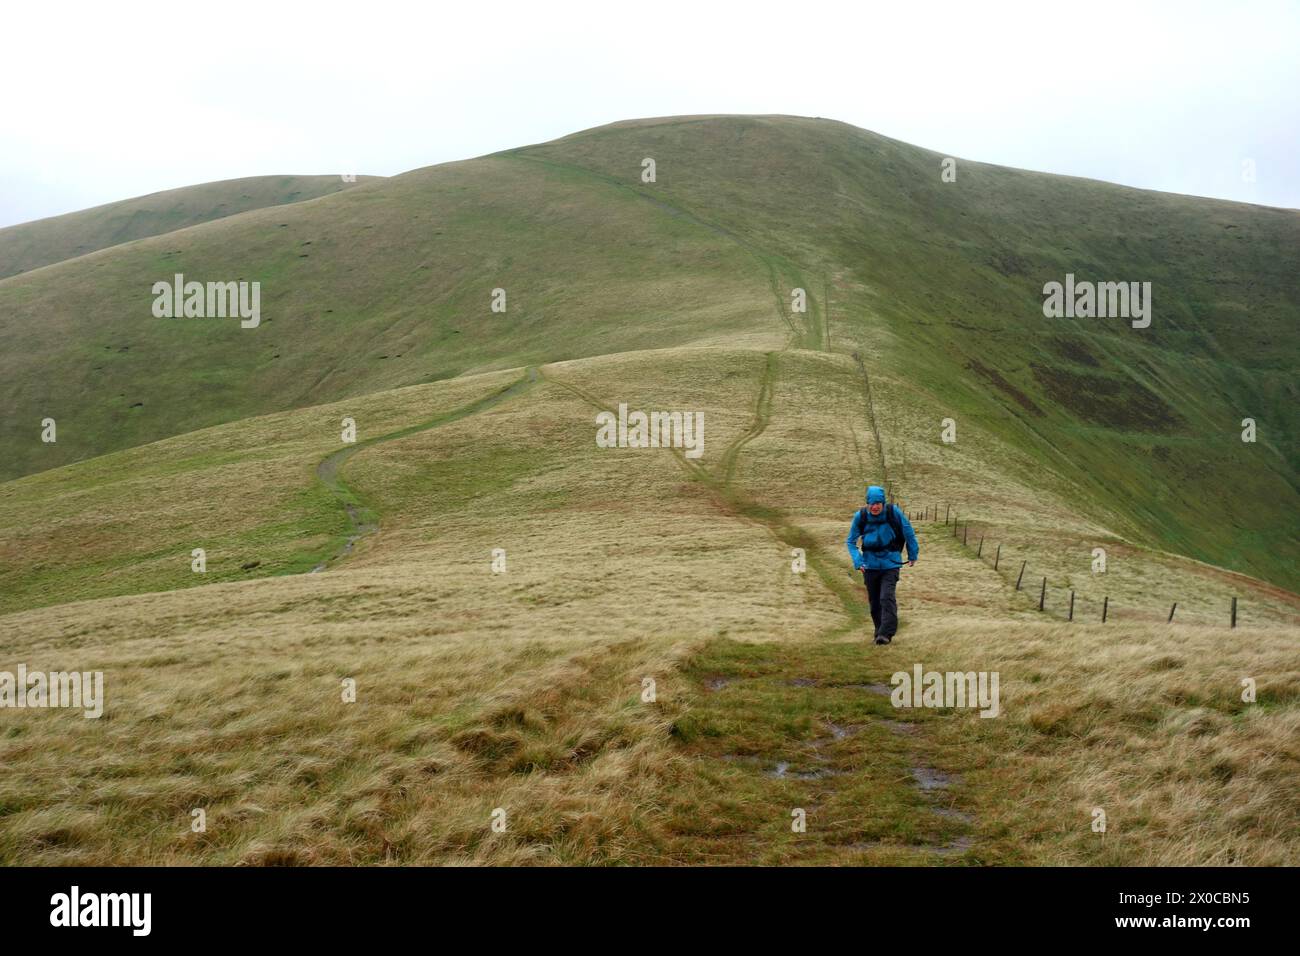 Uomo (escursionista) camminando sui Rowantree Grains (a col) da "Calders" a "Arant Haw" sulle Howgill Hills nello Yorkshire Dales National Park, Inghilterra, Regno Unito. Foto Stock